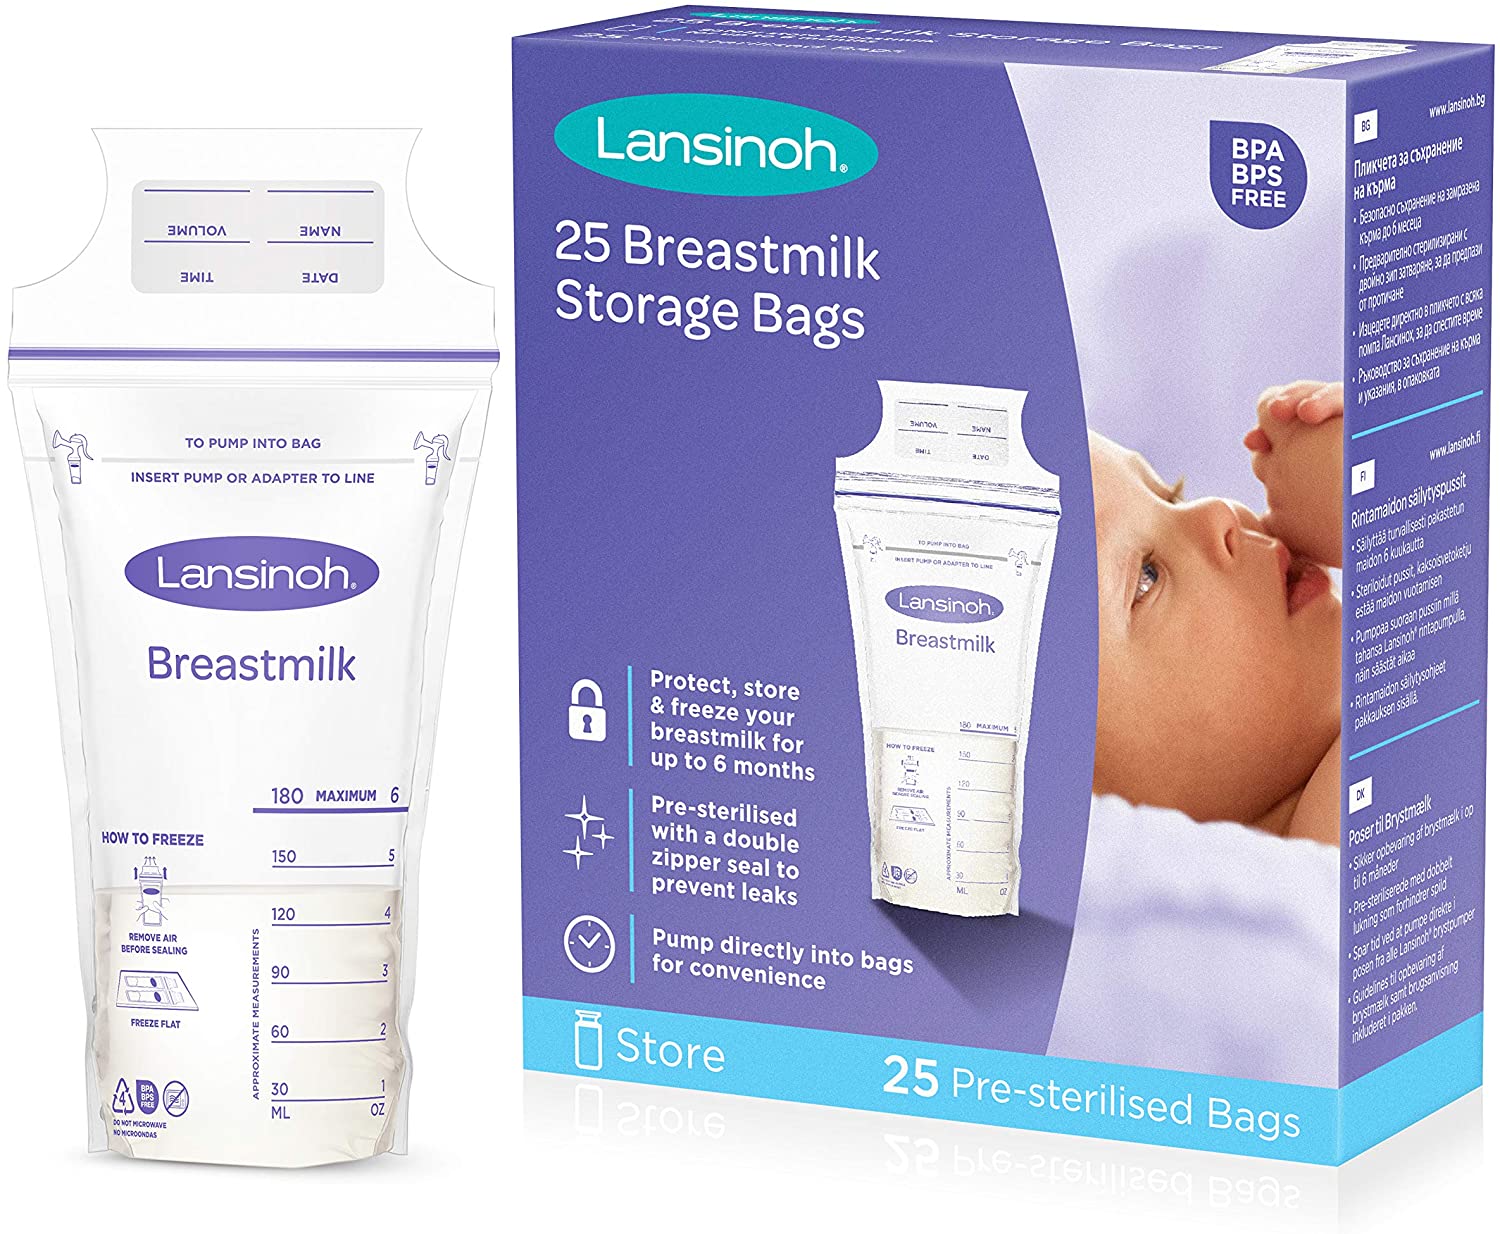 Lansinoh - 25 Breastmilk Storage Bags